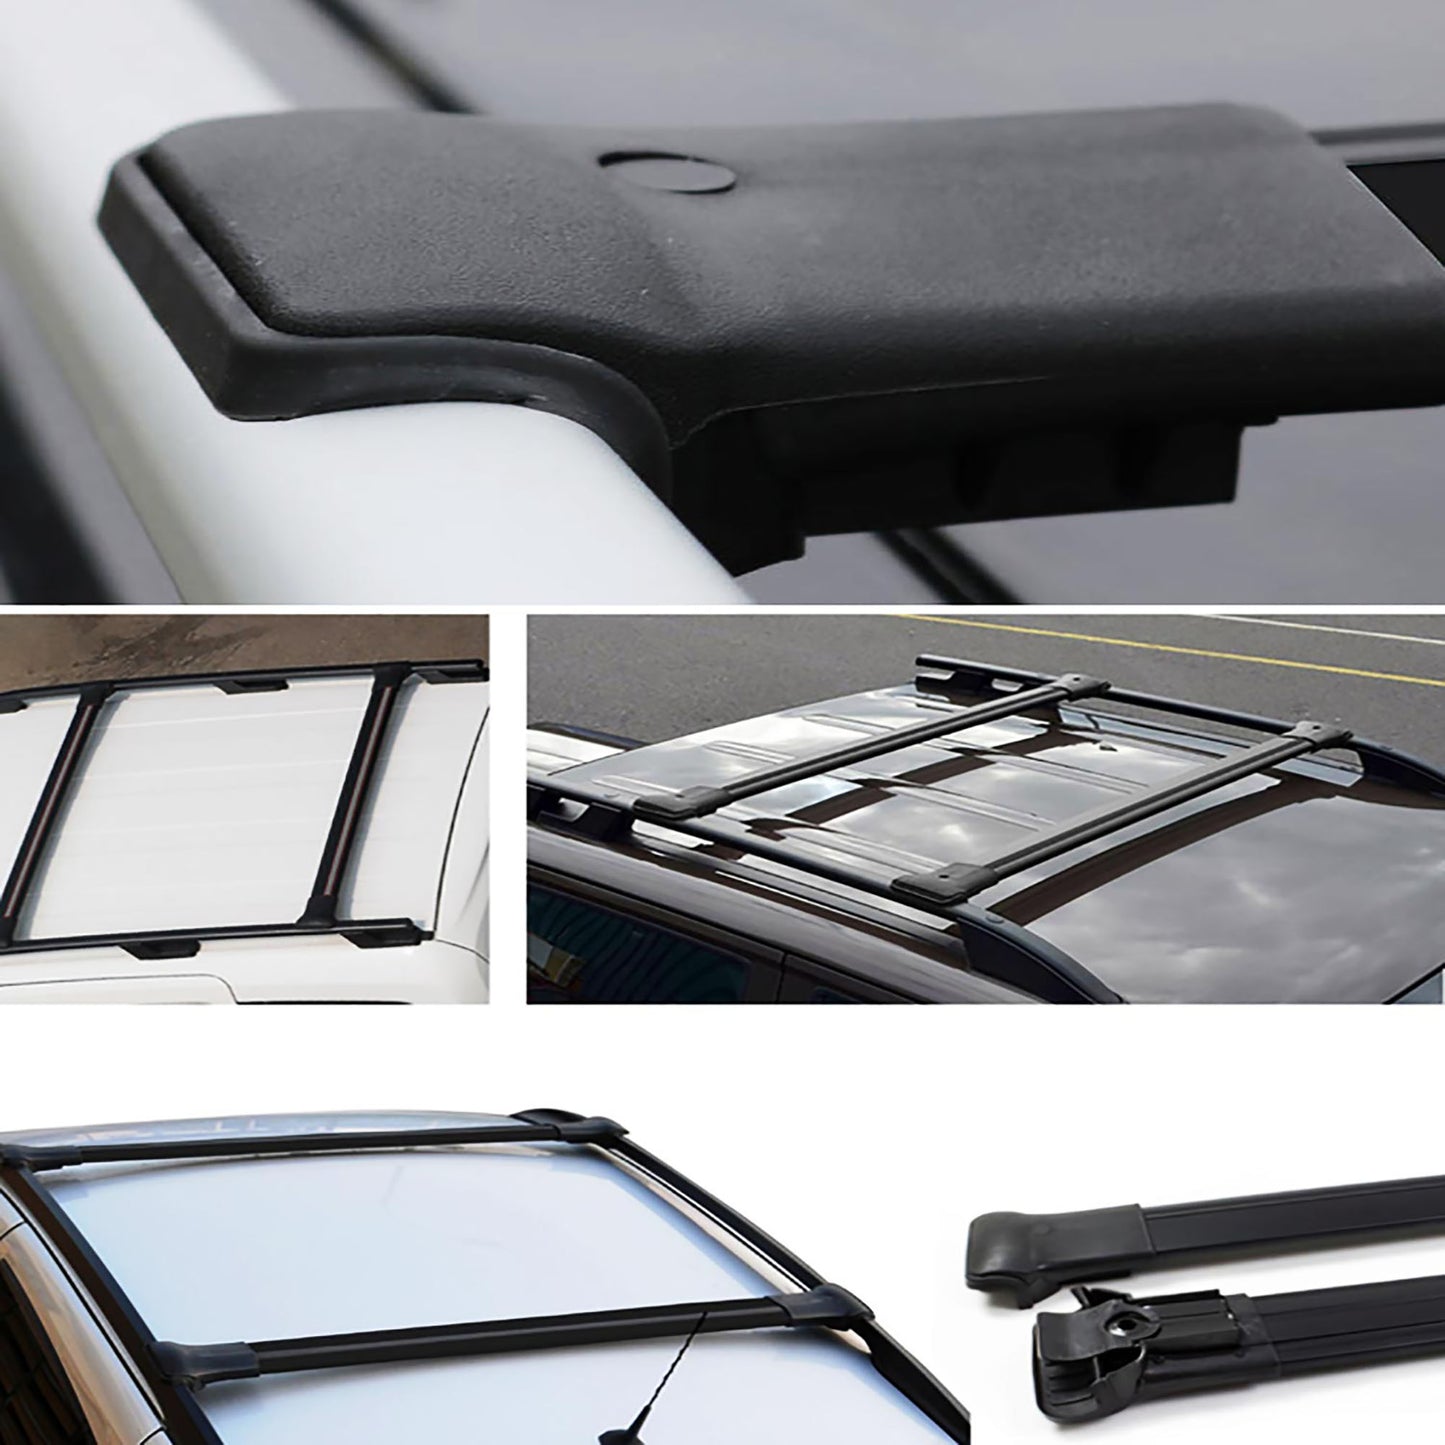 Opel Vivaro Ara Atkı - Elegance V1 - Siyah Aksesuarları Detaylı Resimleri, Kampanya bilgileri ve fiyatı - 4